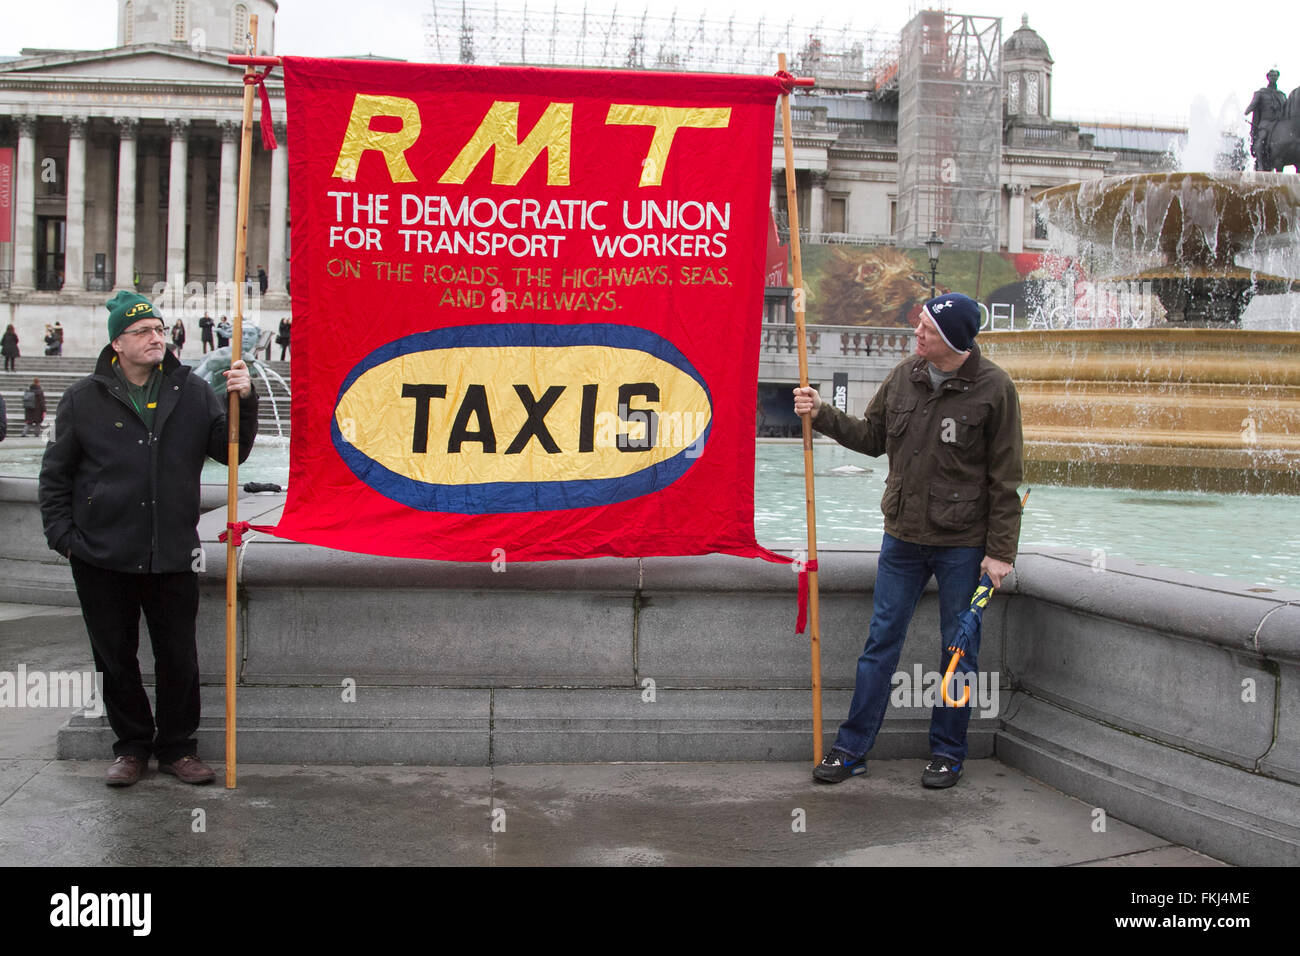 Westminster Londres,Reino Unido. 9 de marzo de 2016. Los taxistas de Londres rally en Trafalgar Square contra Uber controladores y Transporte de Londres. Crédito: amer ghazzal/Alamy Live News Foto de stock